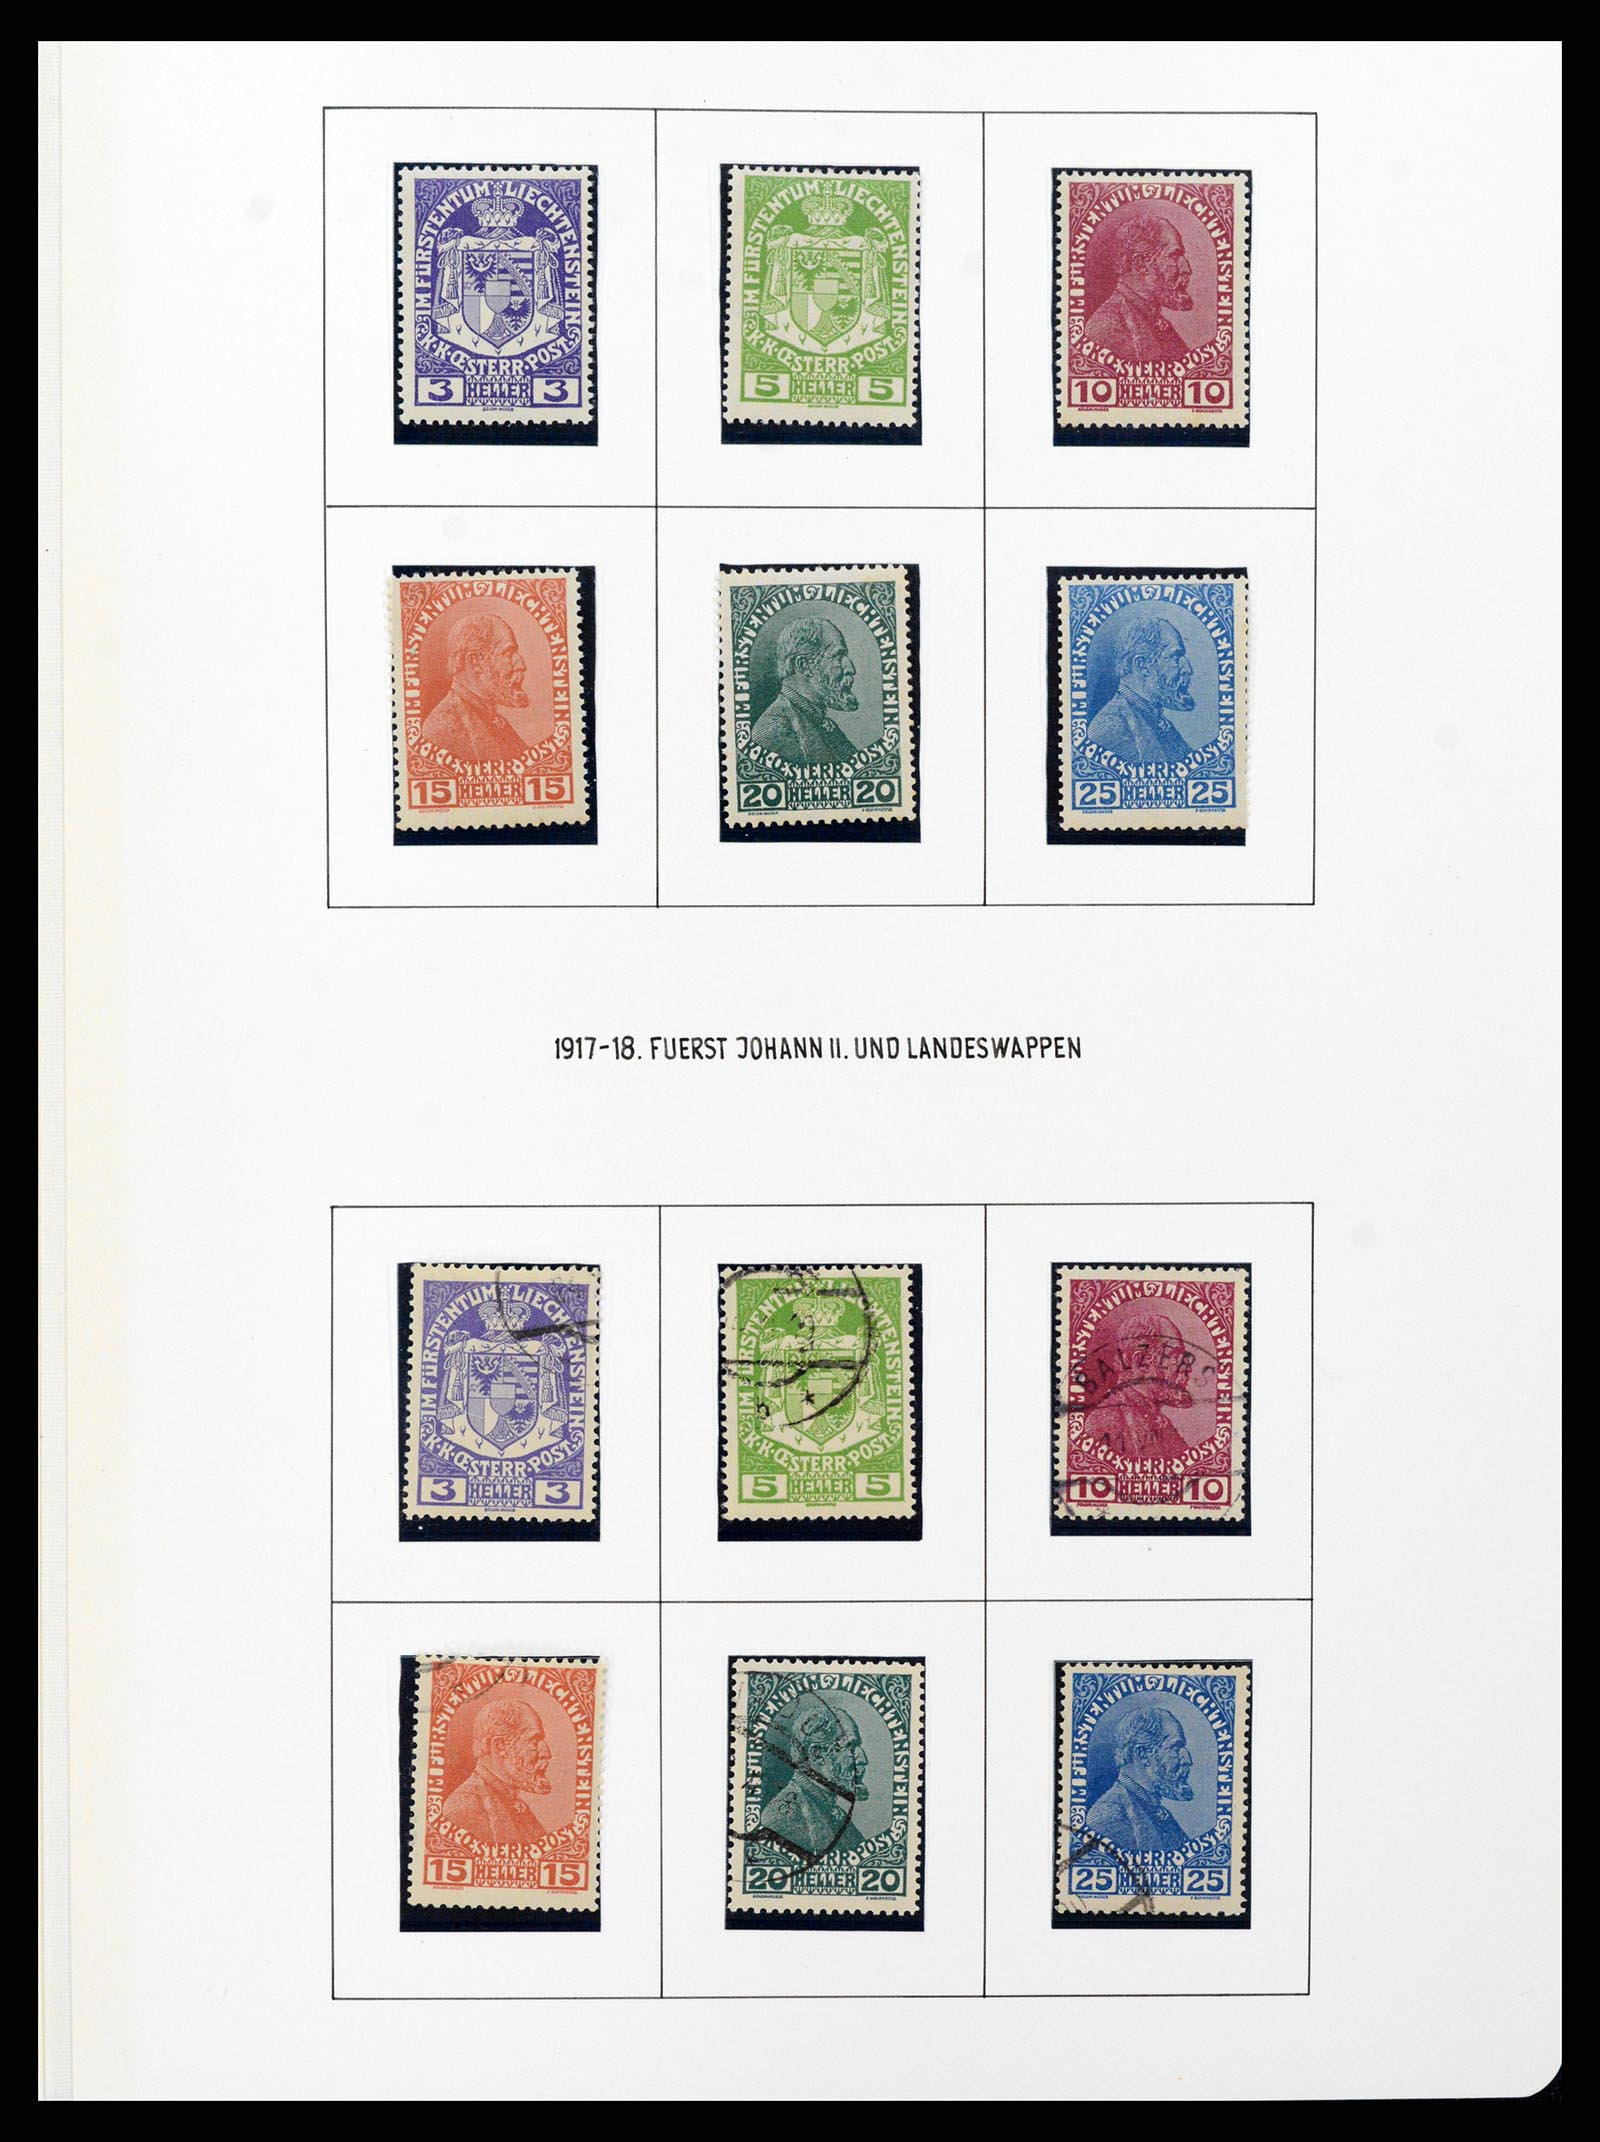 37150 0018 - Stamp collection 37150 Liechtenstein supercollection 1912-1962.